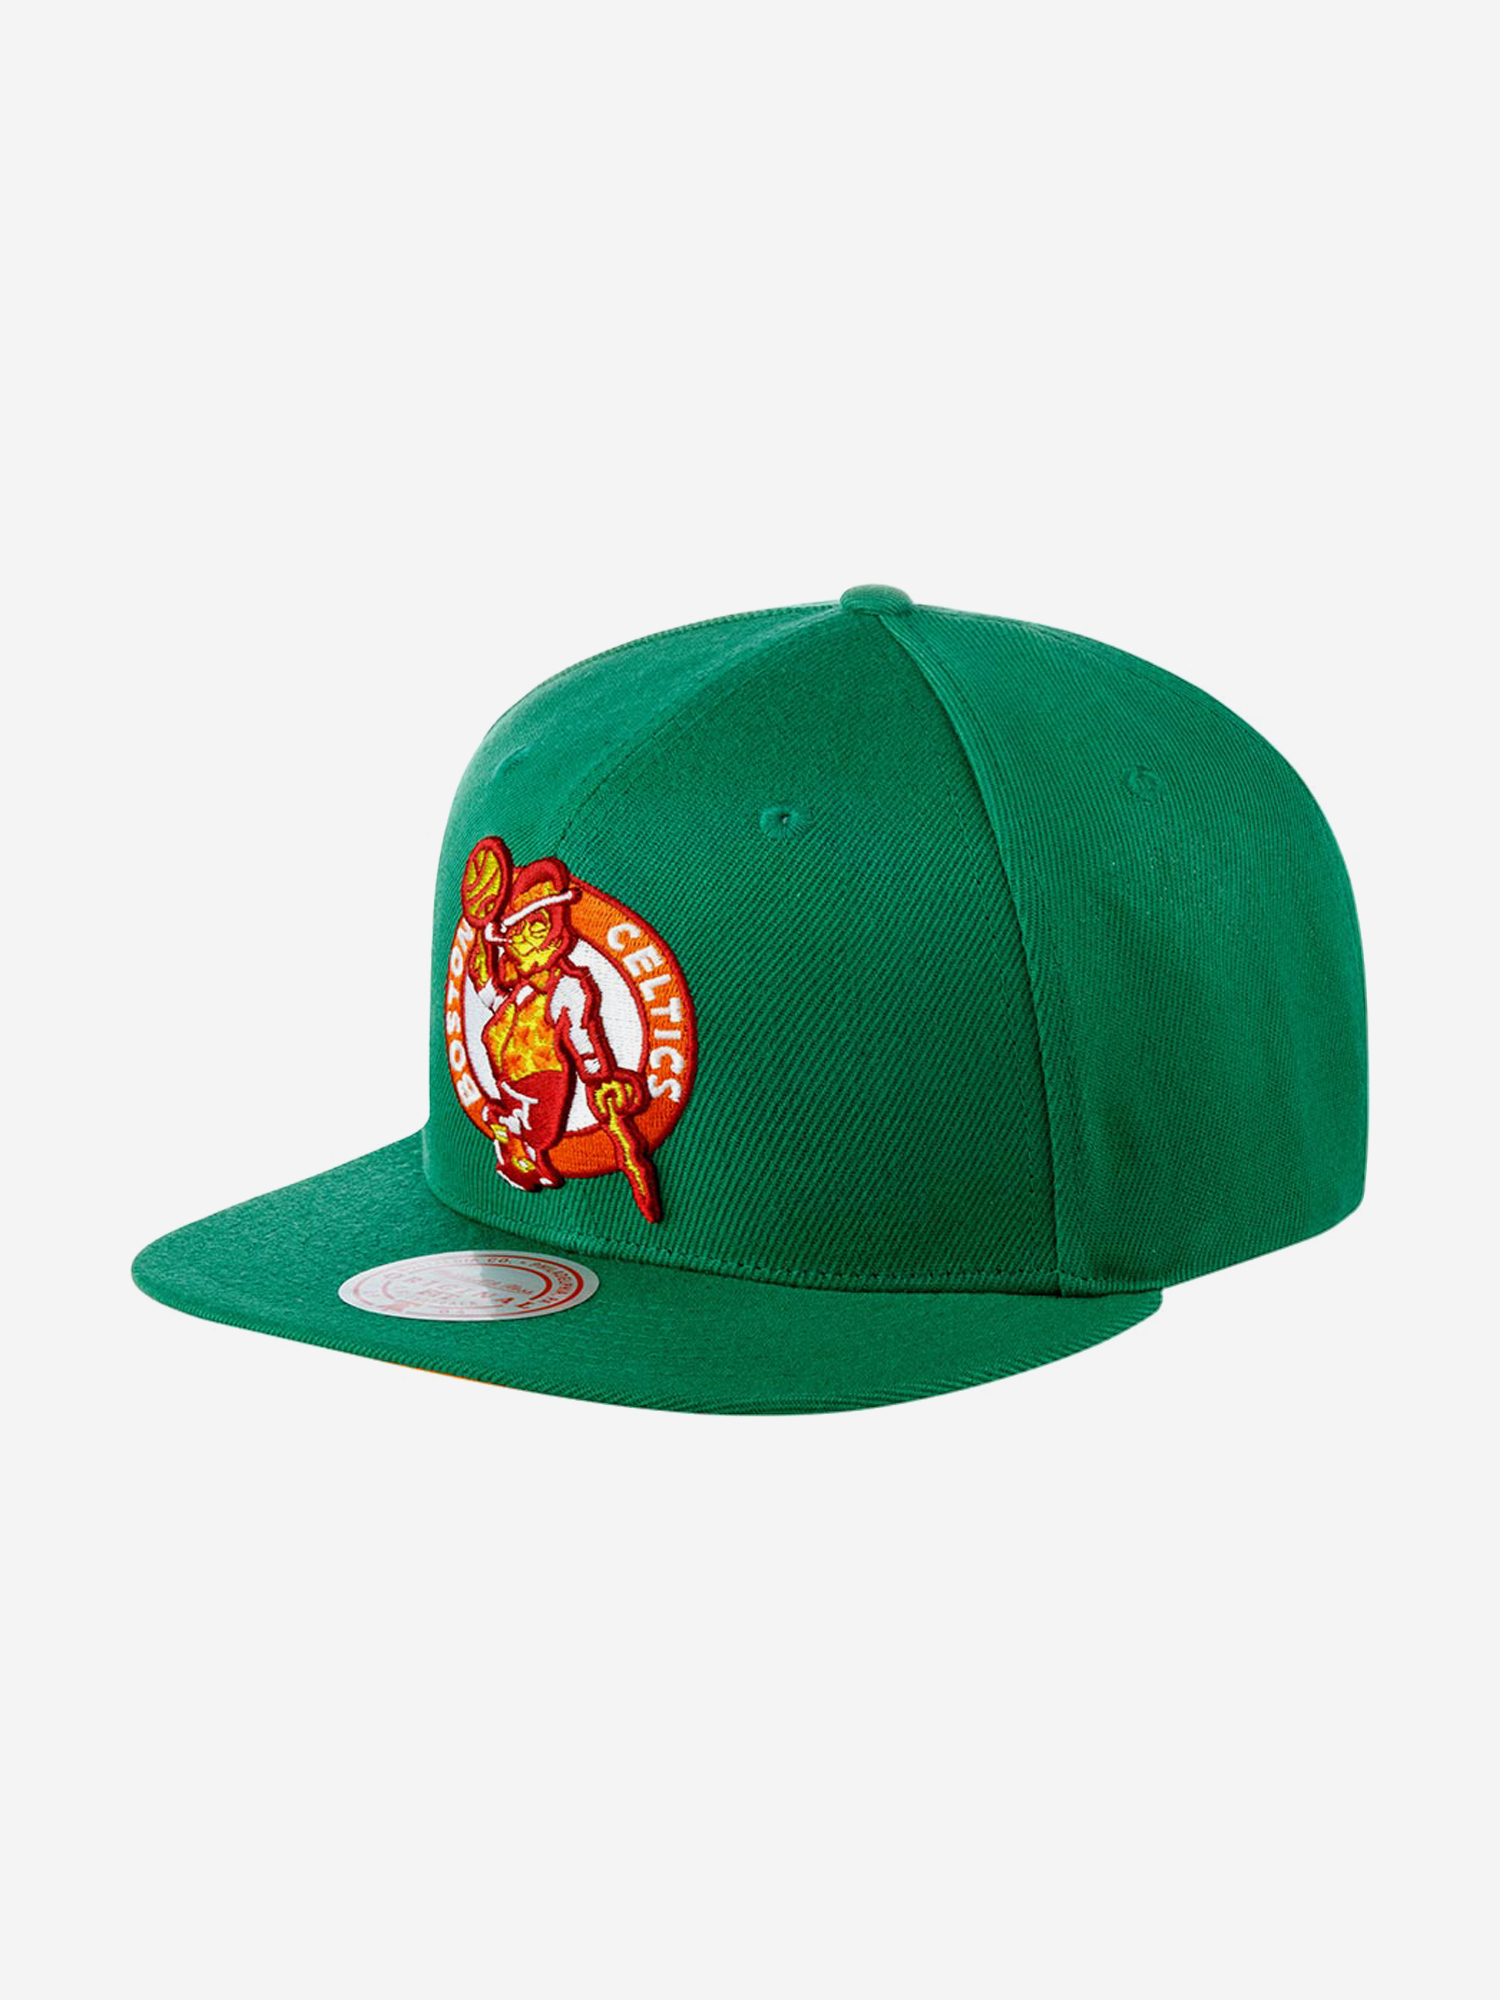 Бейсболка с прямым козырьком MITCHELL NESS 6HSSSH21295-BCEGREN Boston Celtics NBA (зеленый), Зеленый